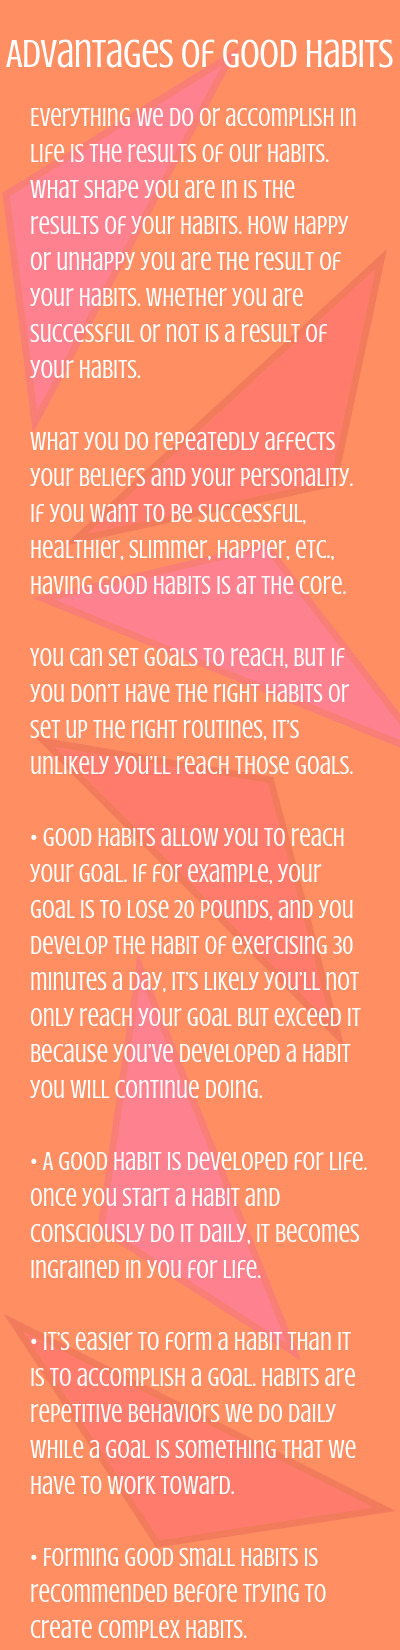 Advantages of Good Habits 